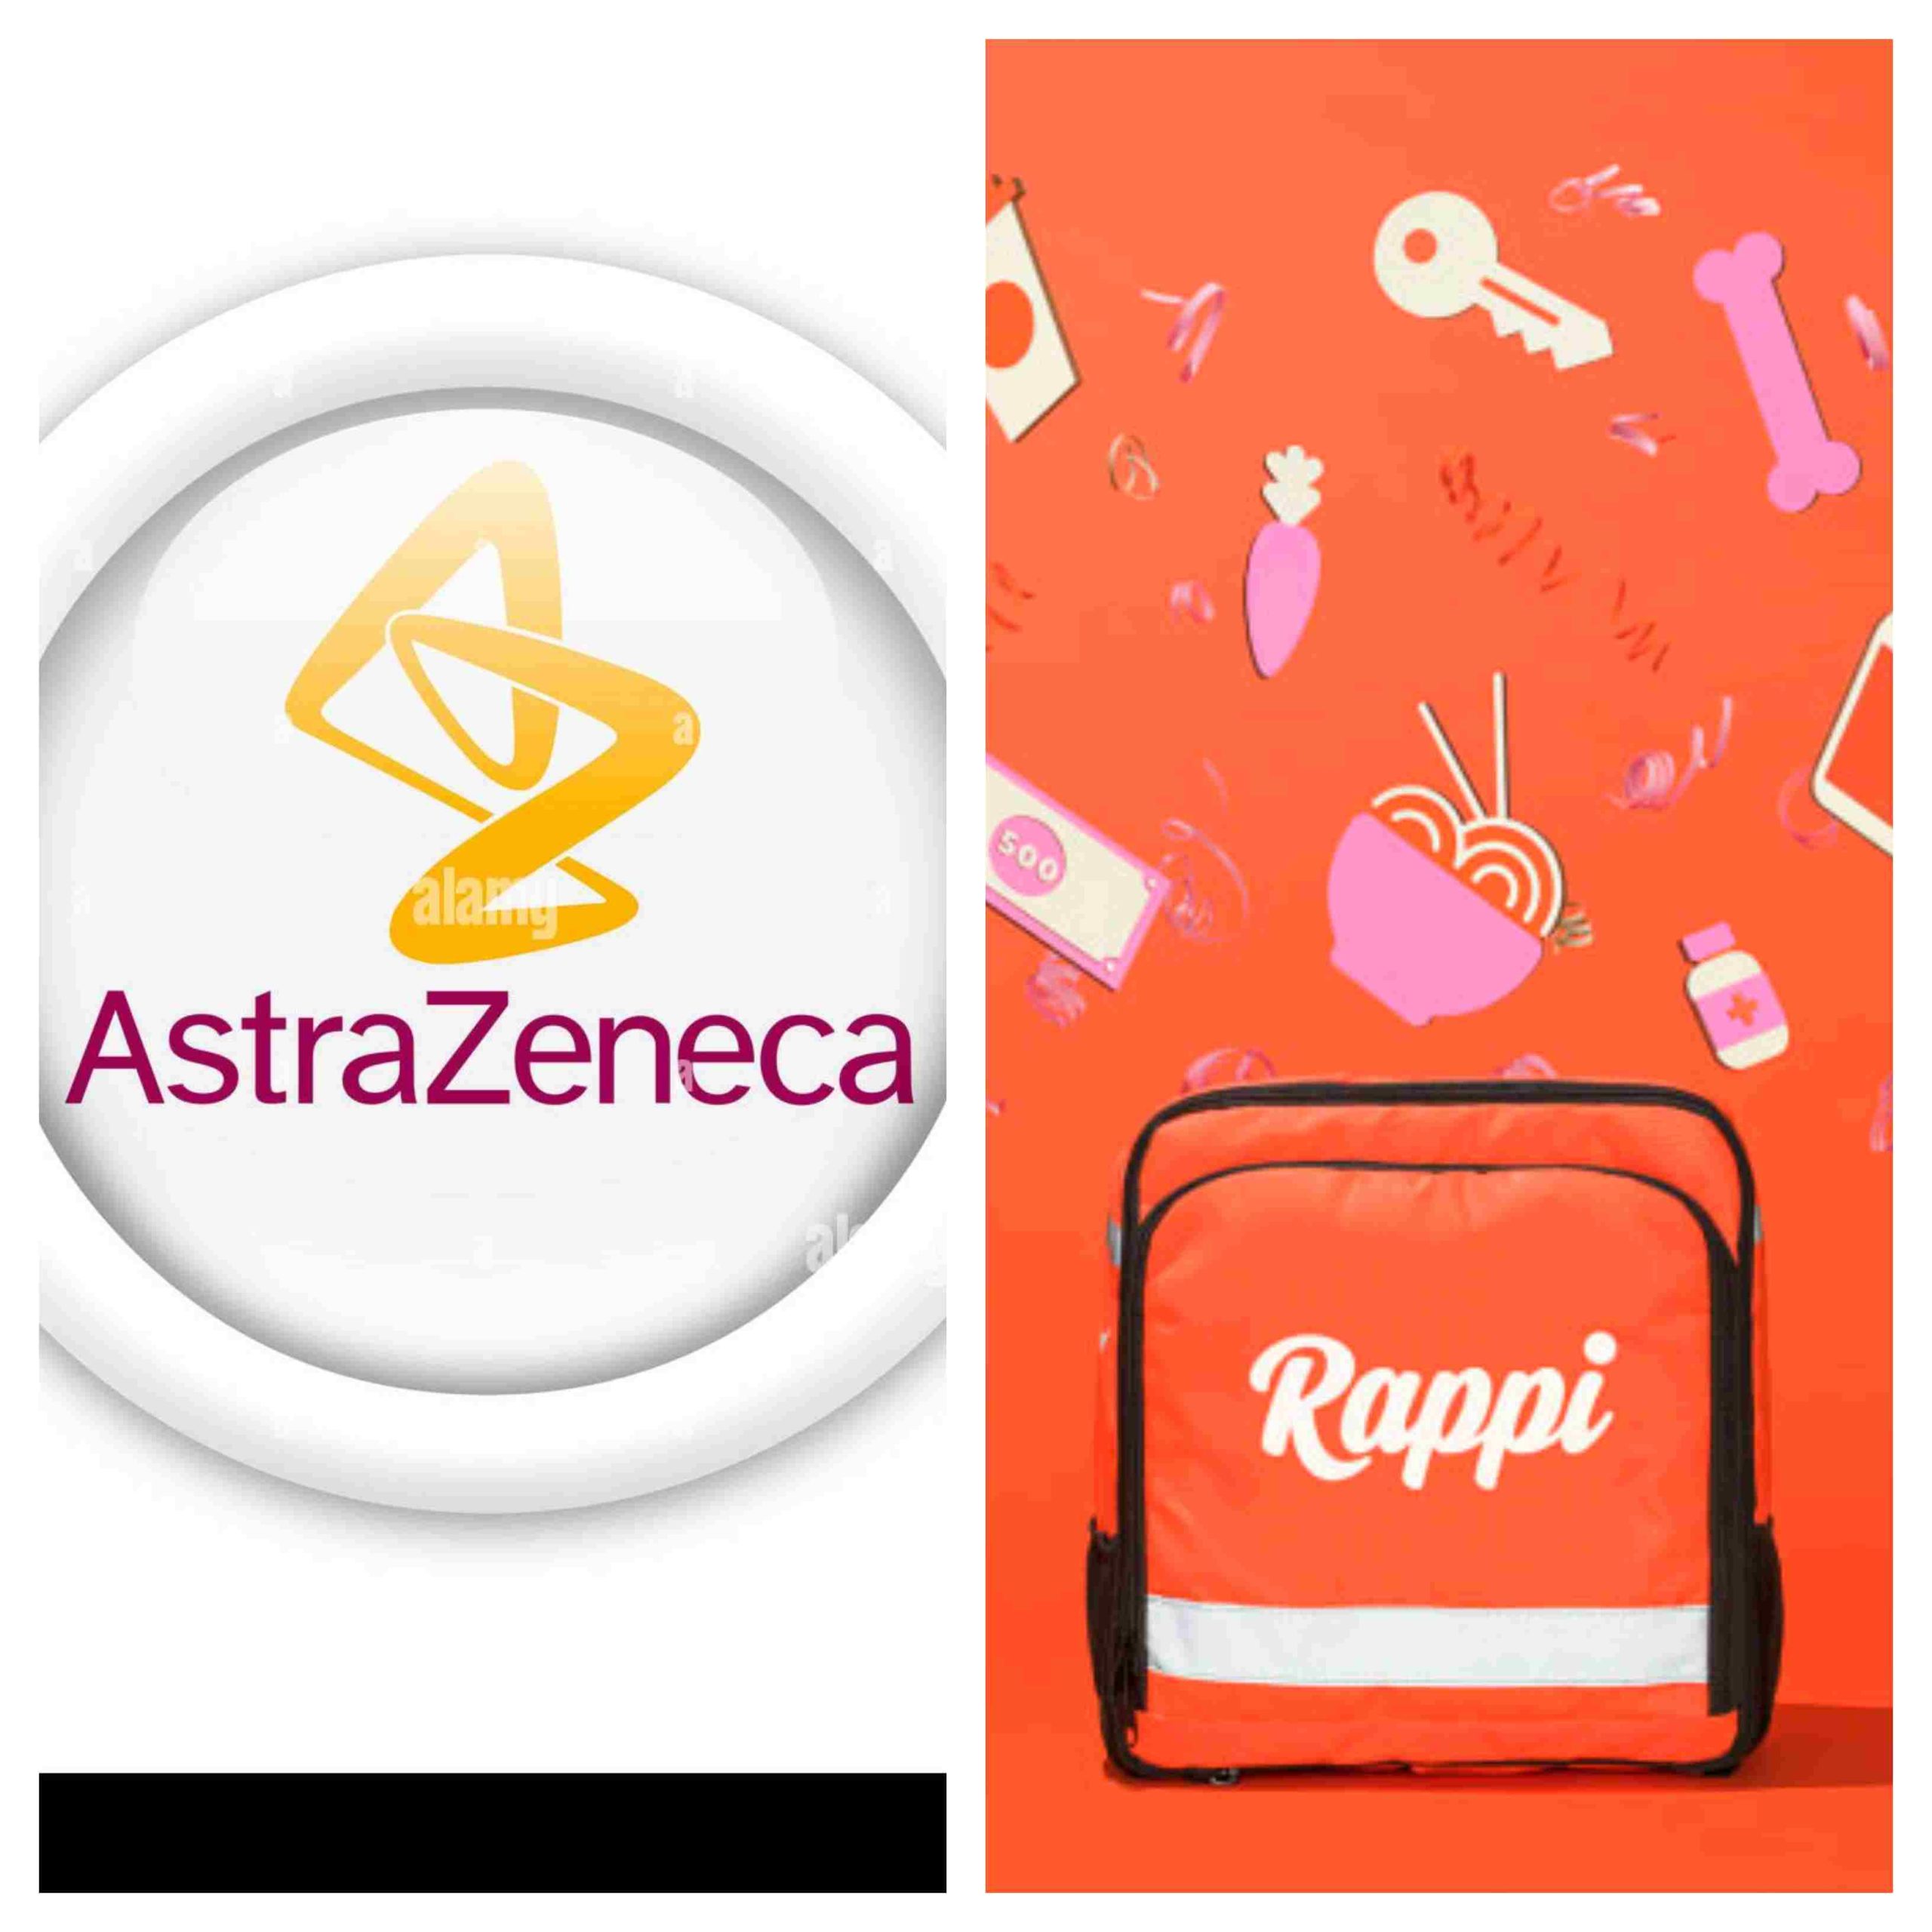 Rappi y AstraZeneca firman alianza para impulsar el cuidado y prevención de enfermedades oncológicas, respiratorias y cardiorenal metabólicas